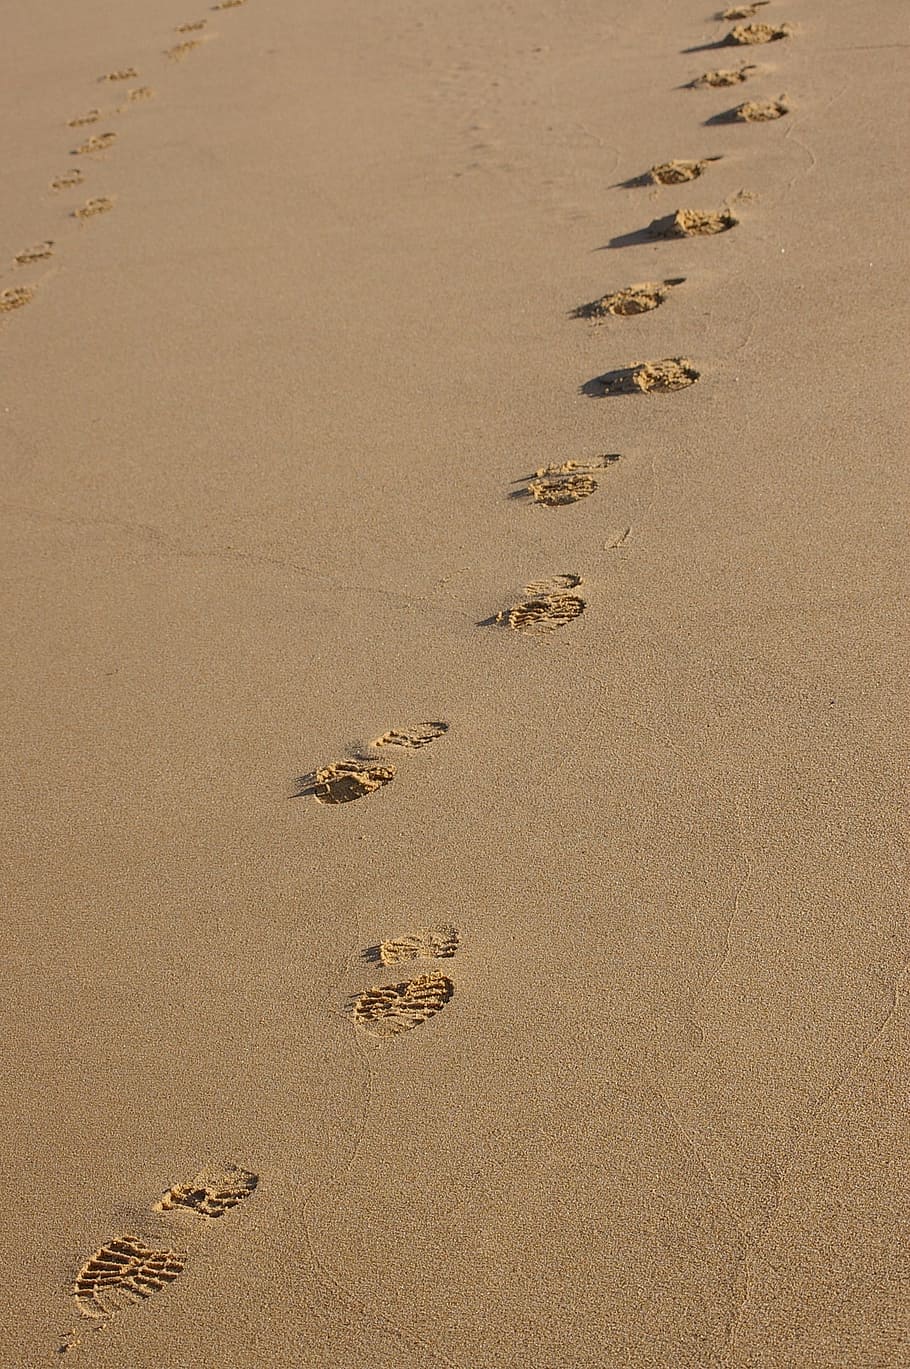 Текст следы на песке. Следы на песке. Следы на песке у моря. Следы на пляже. Пляж песок.